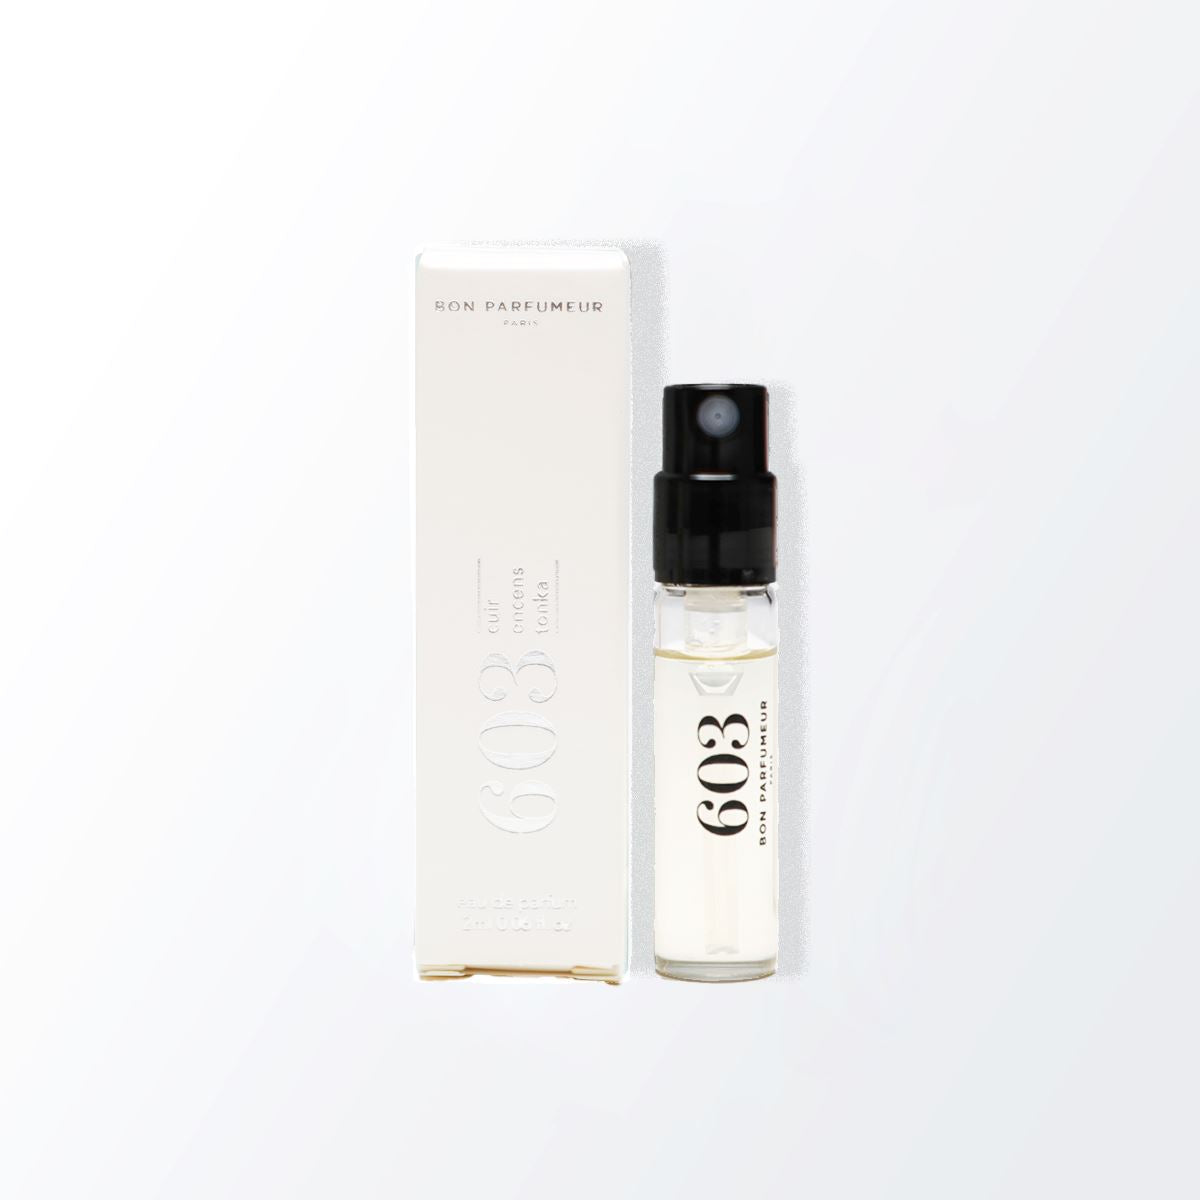 Spray parfumé payant Bon Parfumeur 603: Cuir, encens, tonka 